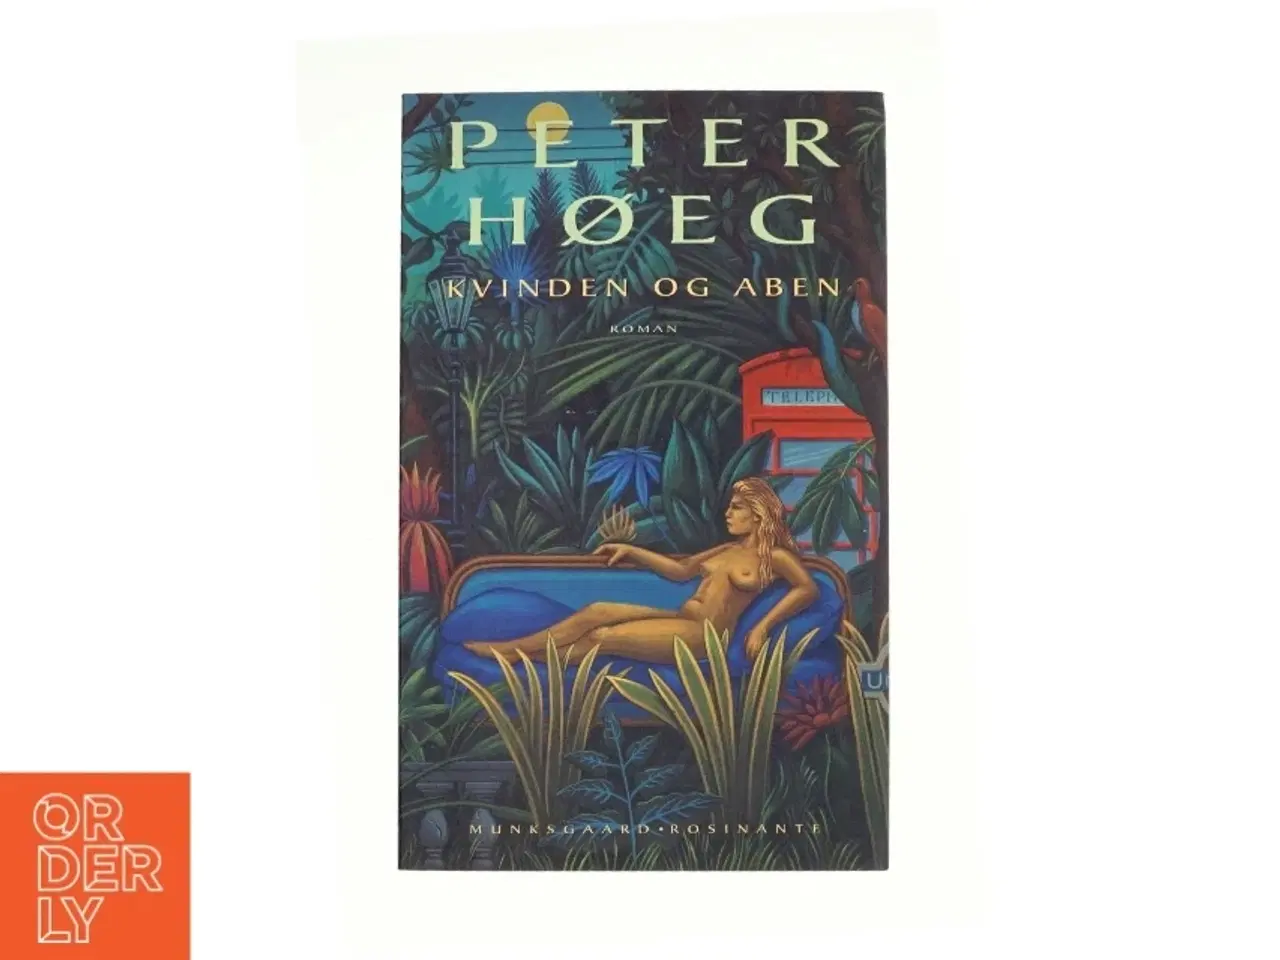 Billede 1 - Kvinden Og Aben: Roman (Danish Edition) af Peter Høeg (Bog)